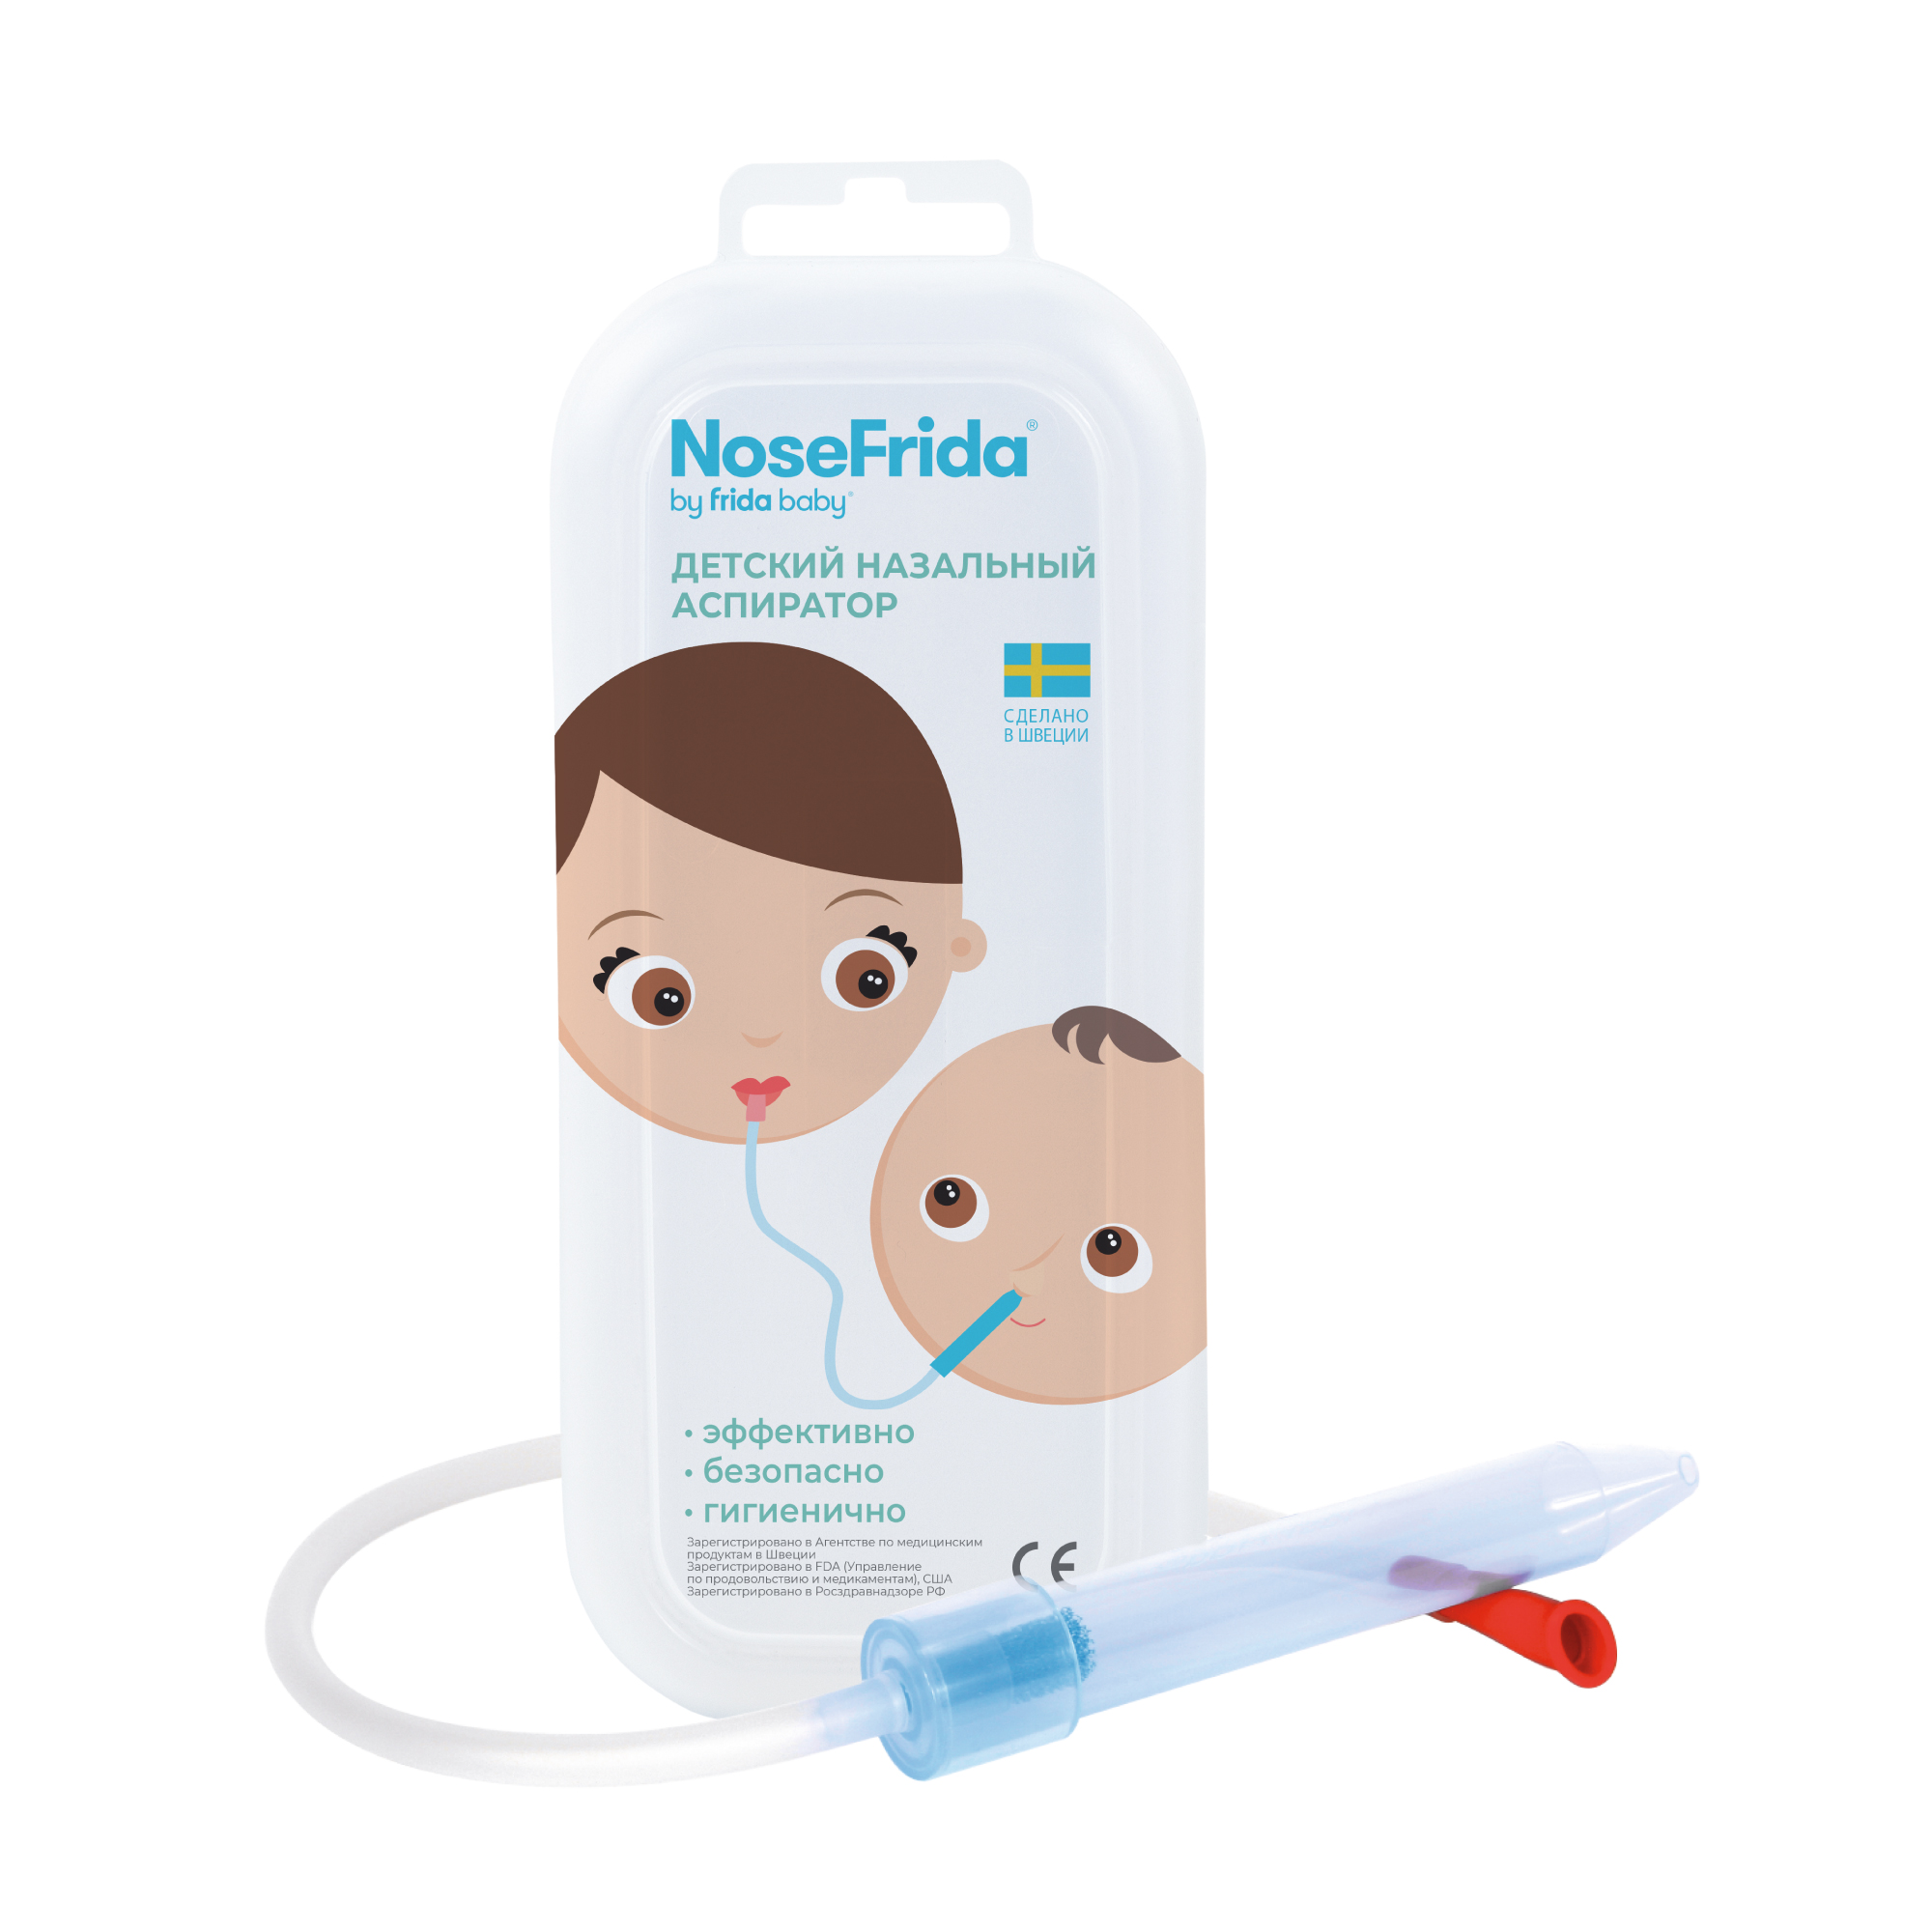 Nosefrida (Носфрида), аспиратор назальный для детей канпол аспиратор назальный с 2 мя насадками 0м 9 119